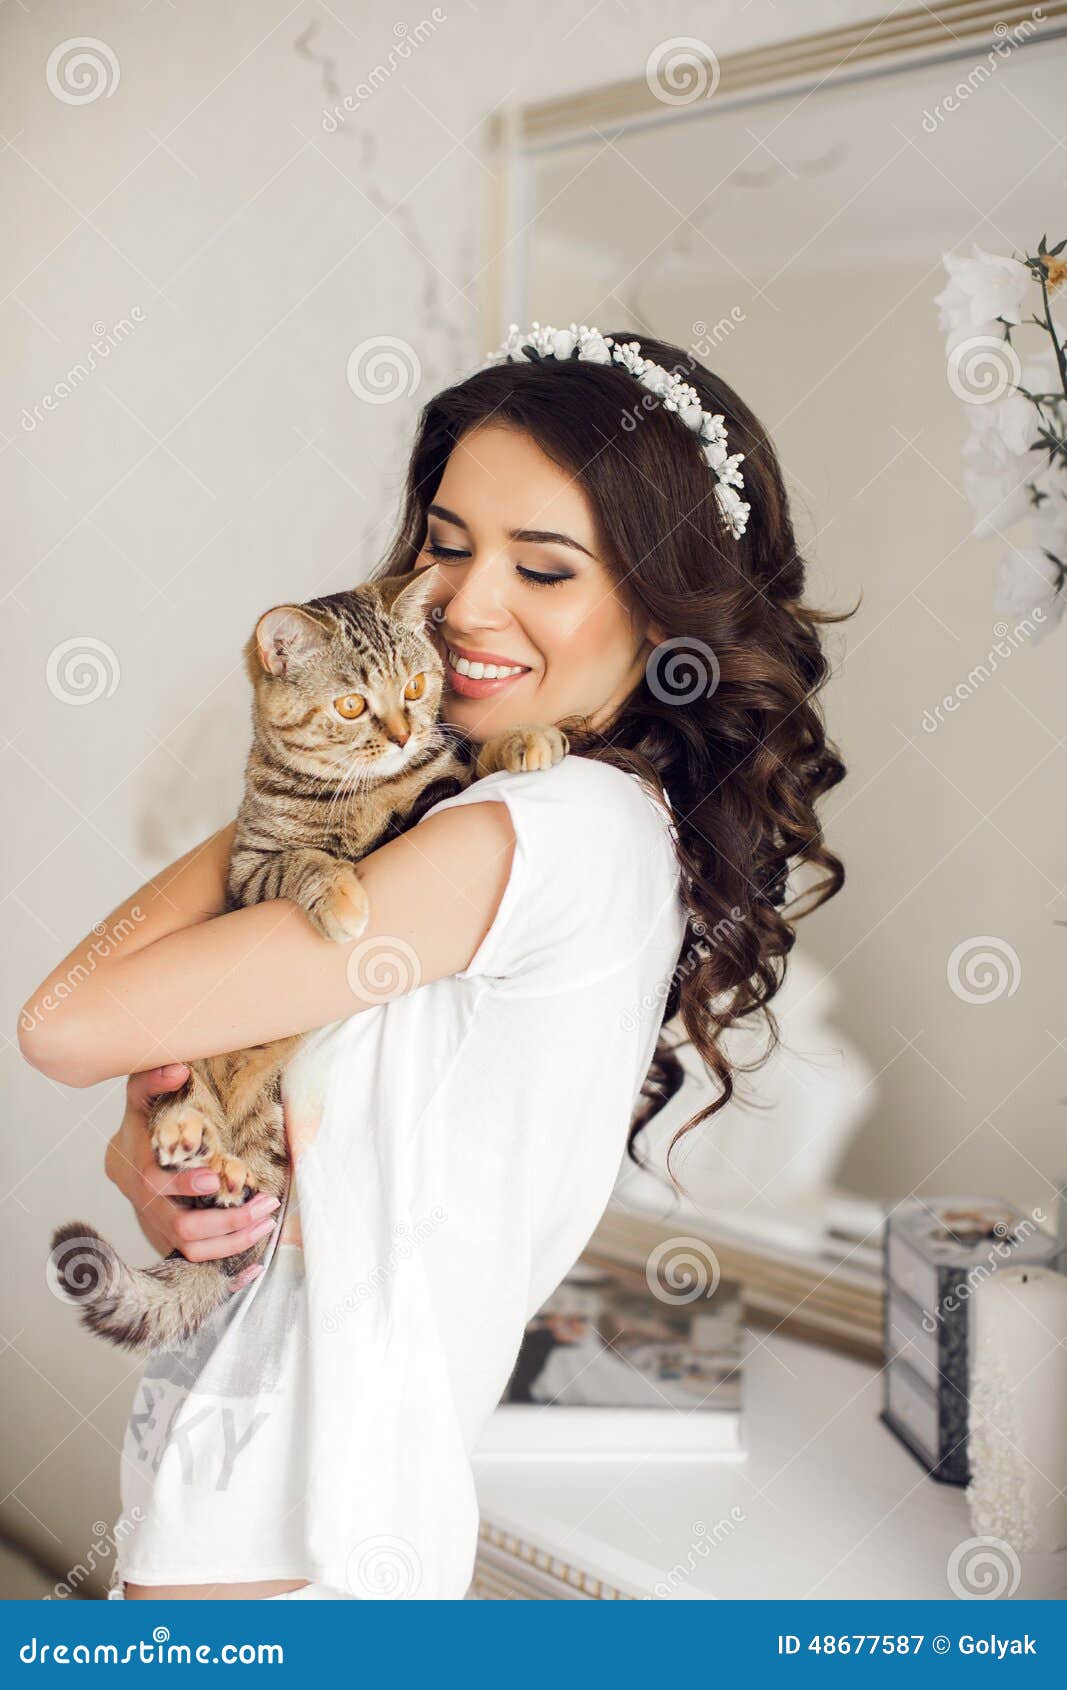 la-mujer-en-el-dormitorio-con-el-gato-en-sus-brazos-48677587.jpg